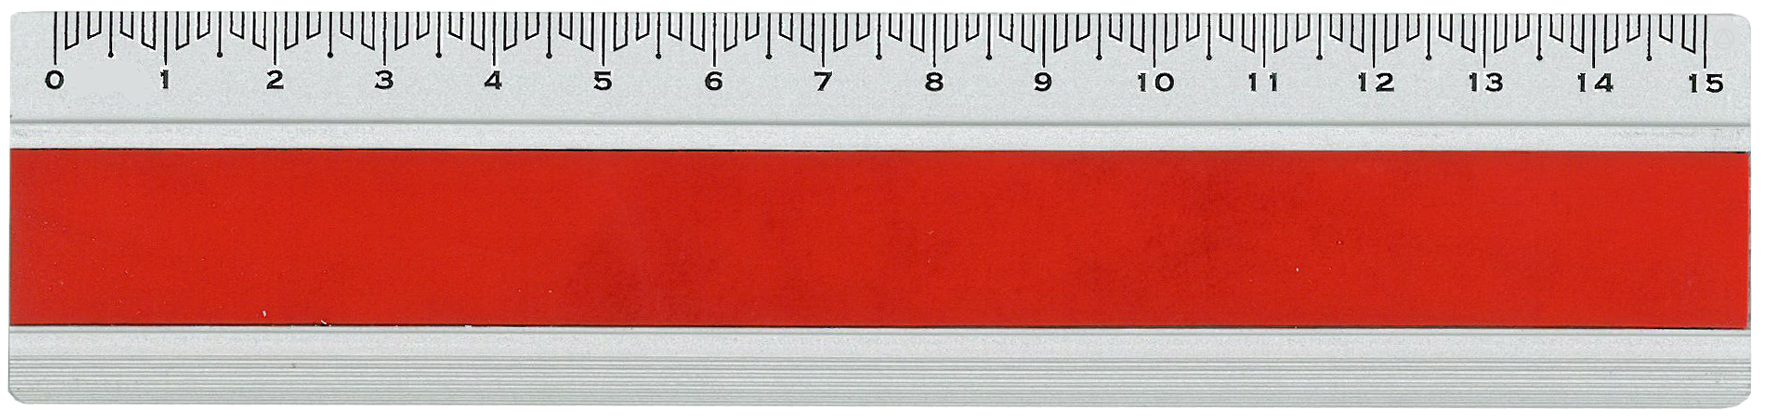 DUX Règle Joy Color 15cm FA-JC/15R Alu, rouge